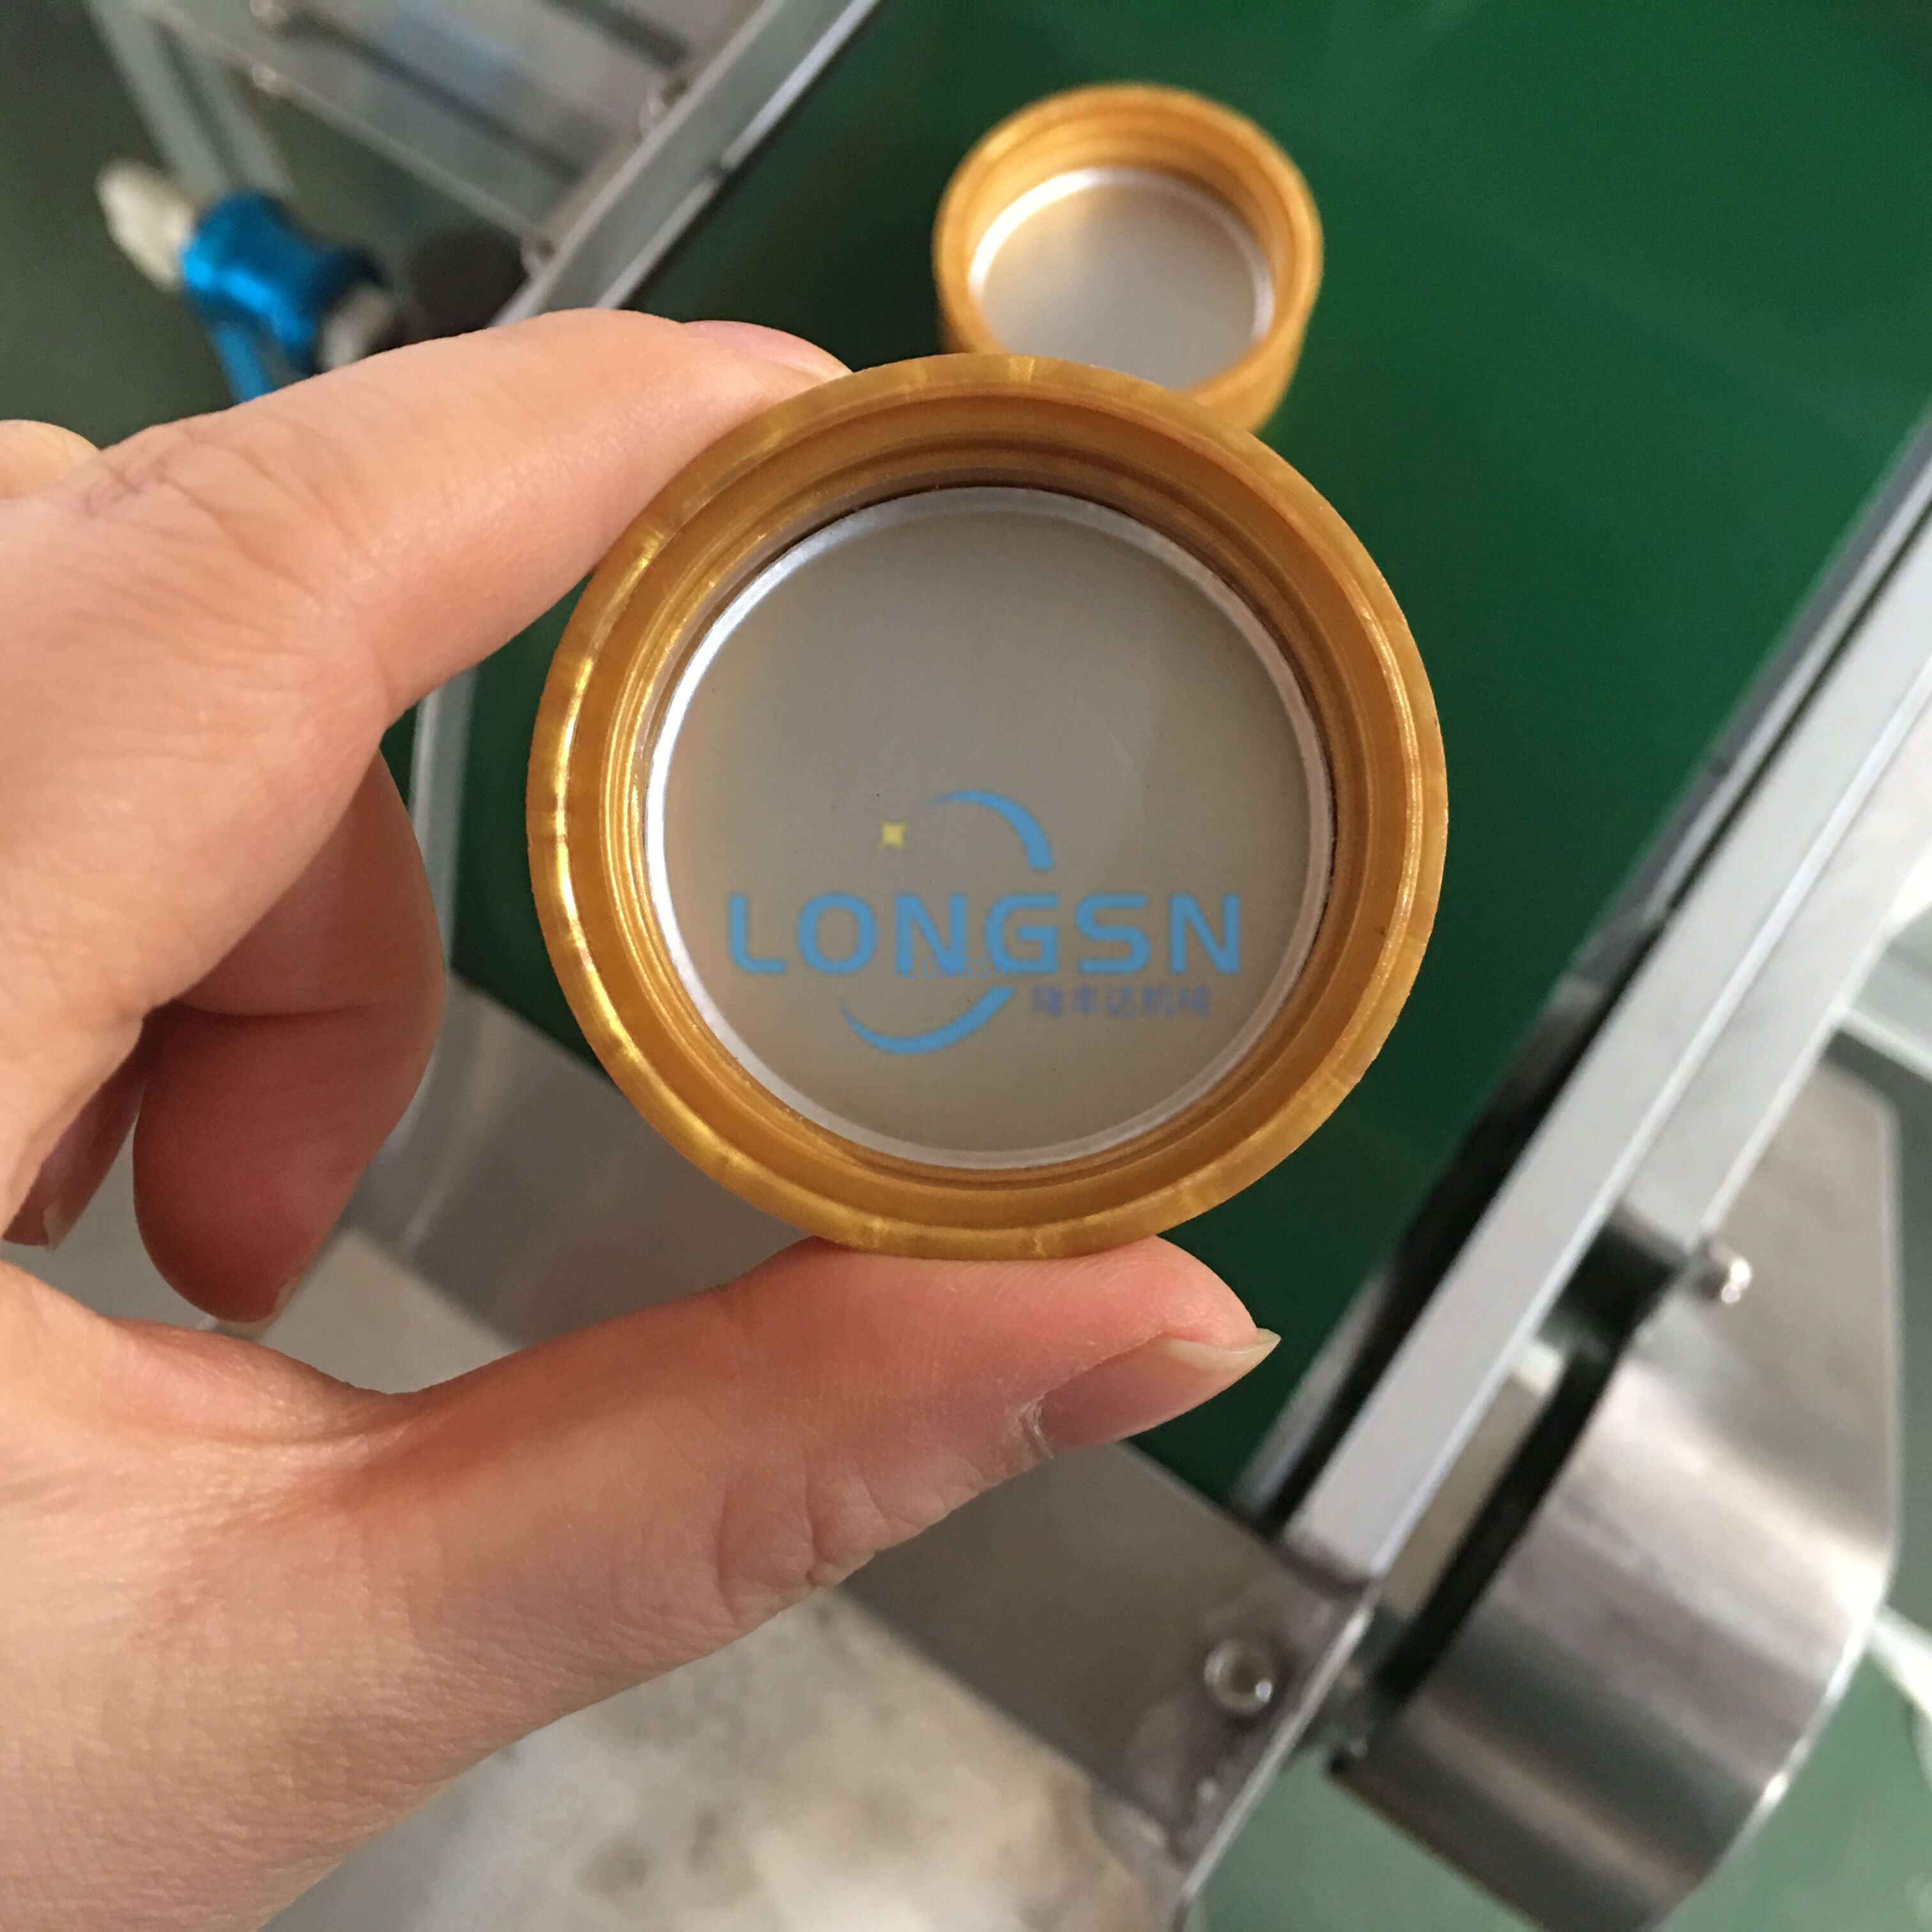 Doublure cosmétique automatique de bouchon de bouteille insérant la machine de doublure